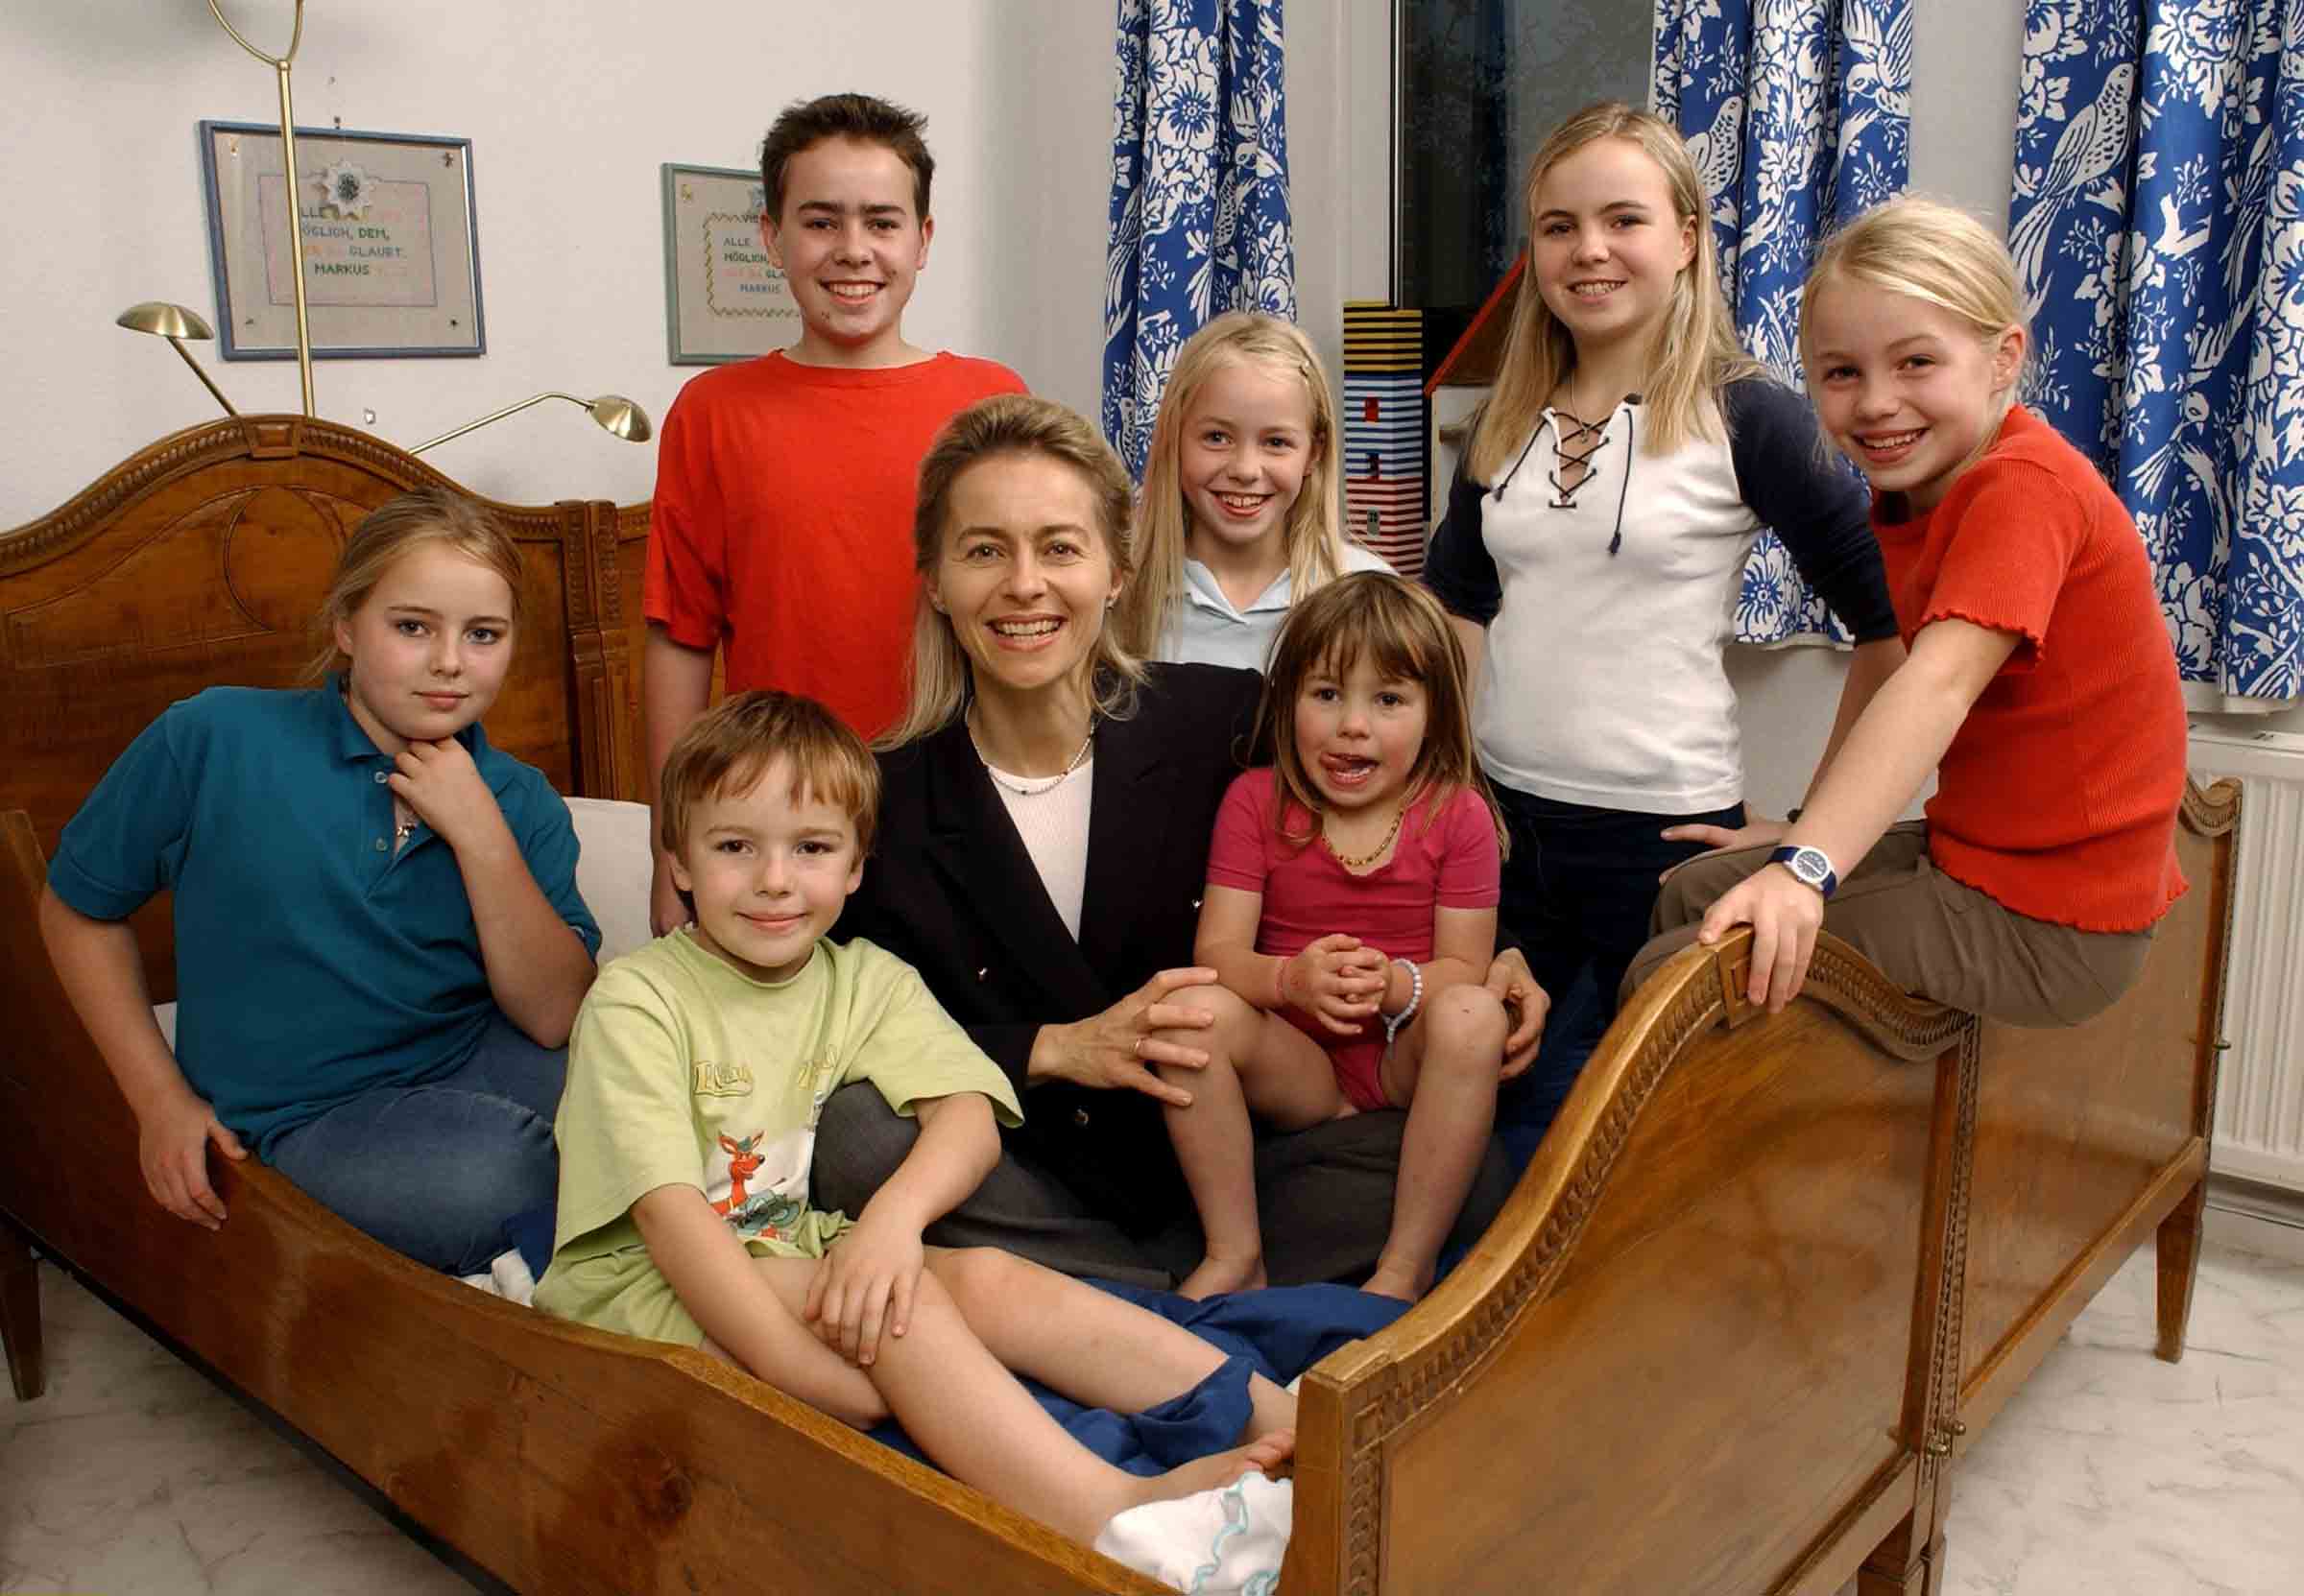 Leyen, Ursula v. d. - Politikerin, CDU, D - niedersächs. Ministerin Soz., Frauen, Familie, Gesundheit - mit ihren Kindern